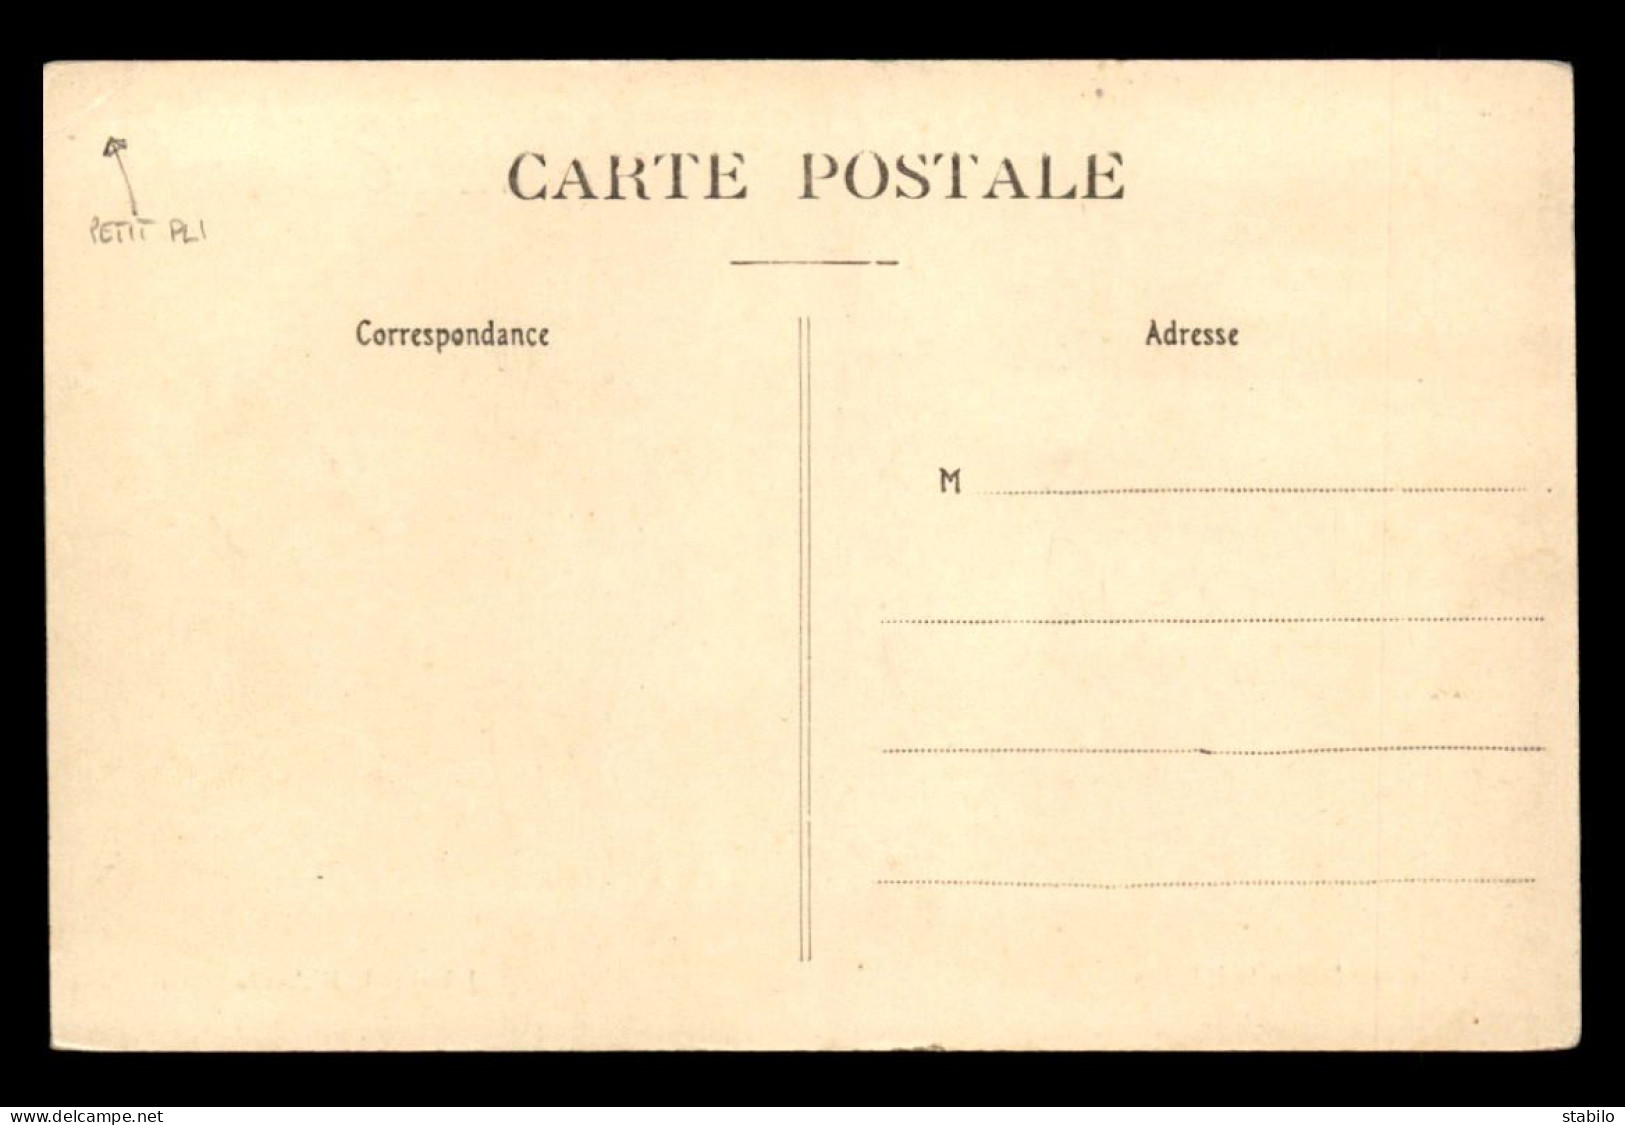 AVIATION - GRANDE SEMAINE D'AVIATION DE CHAMPAGNE - JOURNEE DU 27 AOUT - LATHAM AU ZENITH - ....-1914: Précurseurs